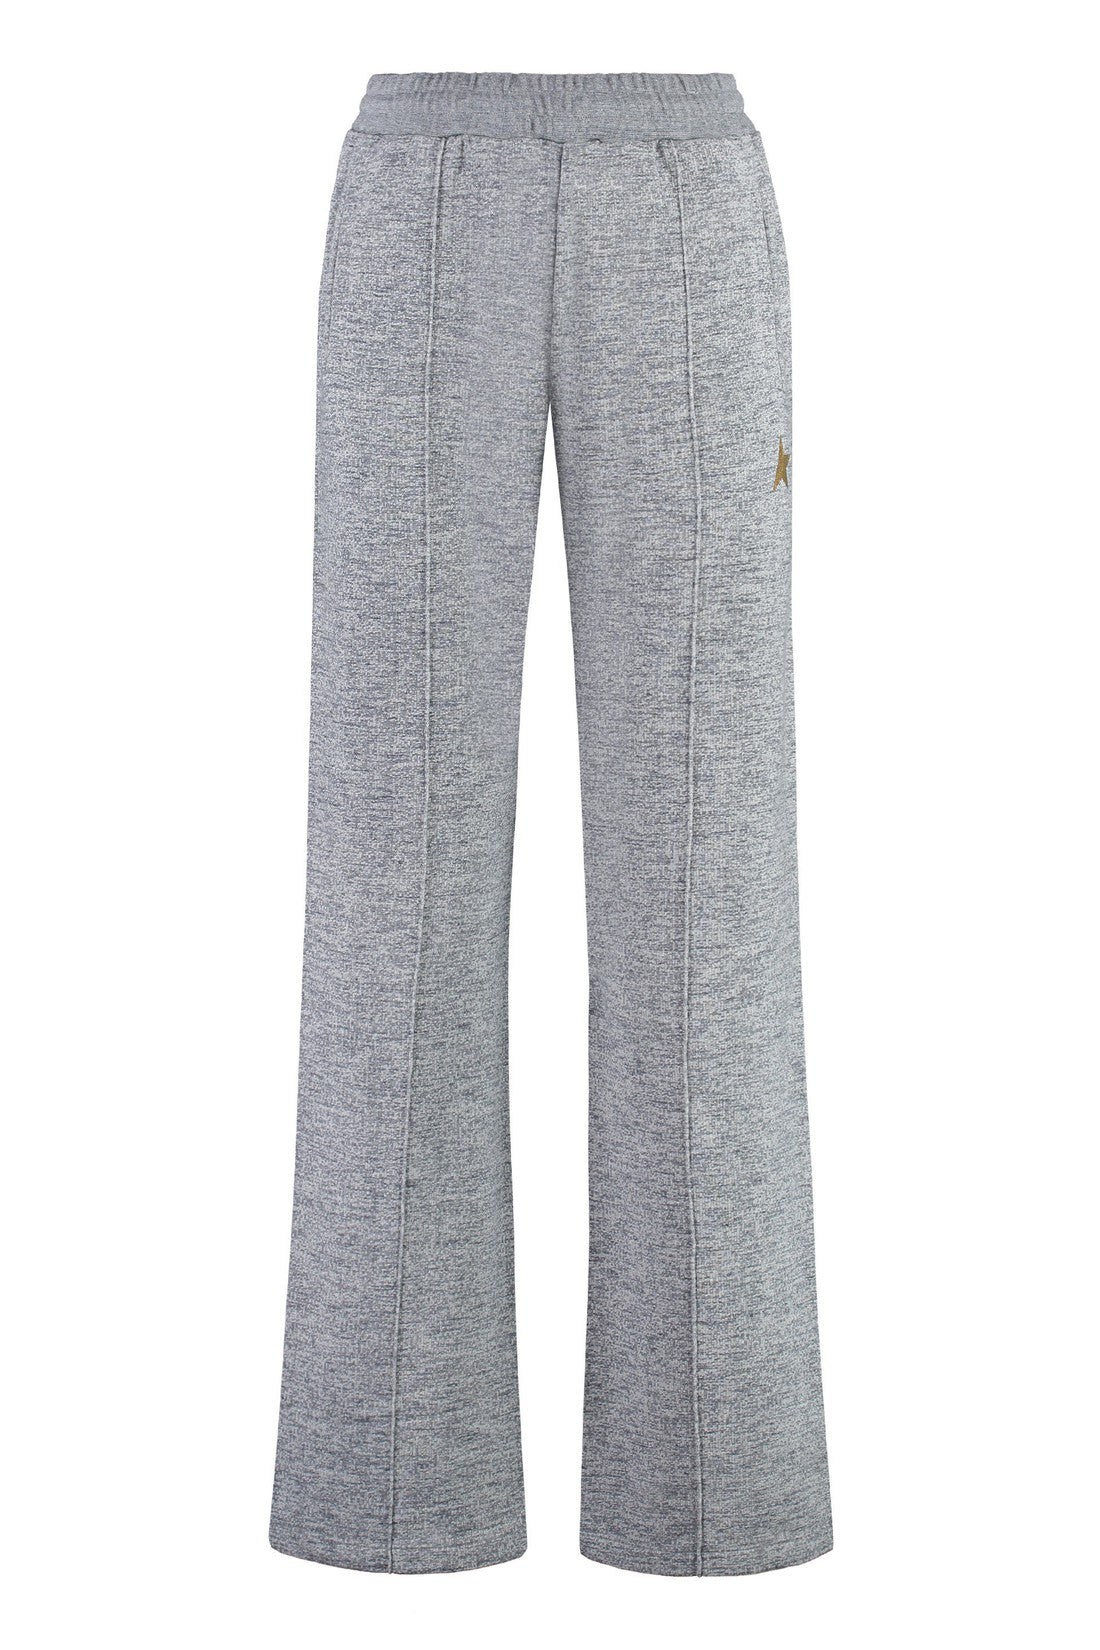 Golden Goose-OUTLET-SALE-Cotton trousers-ARCHIVIST